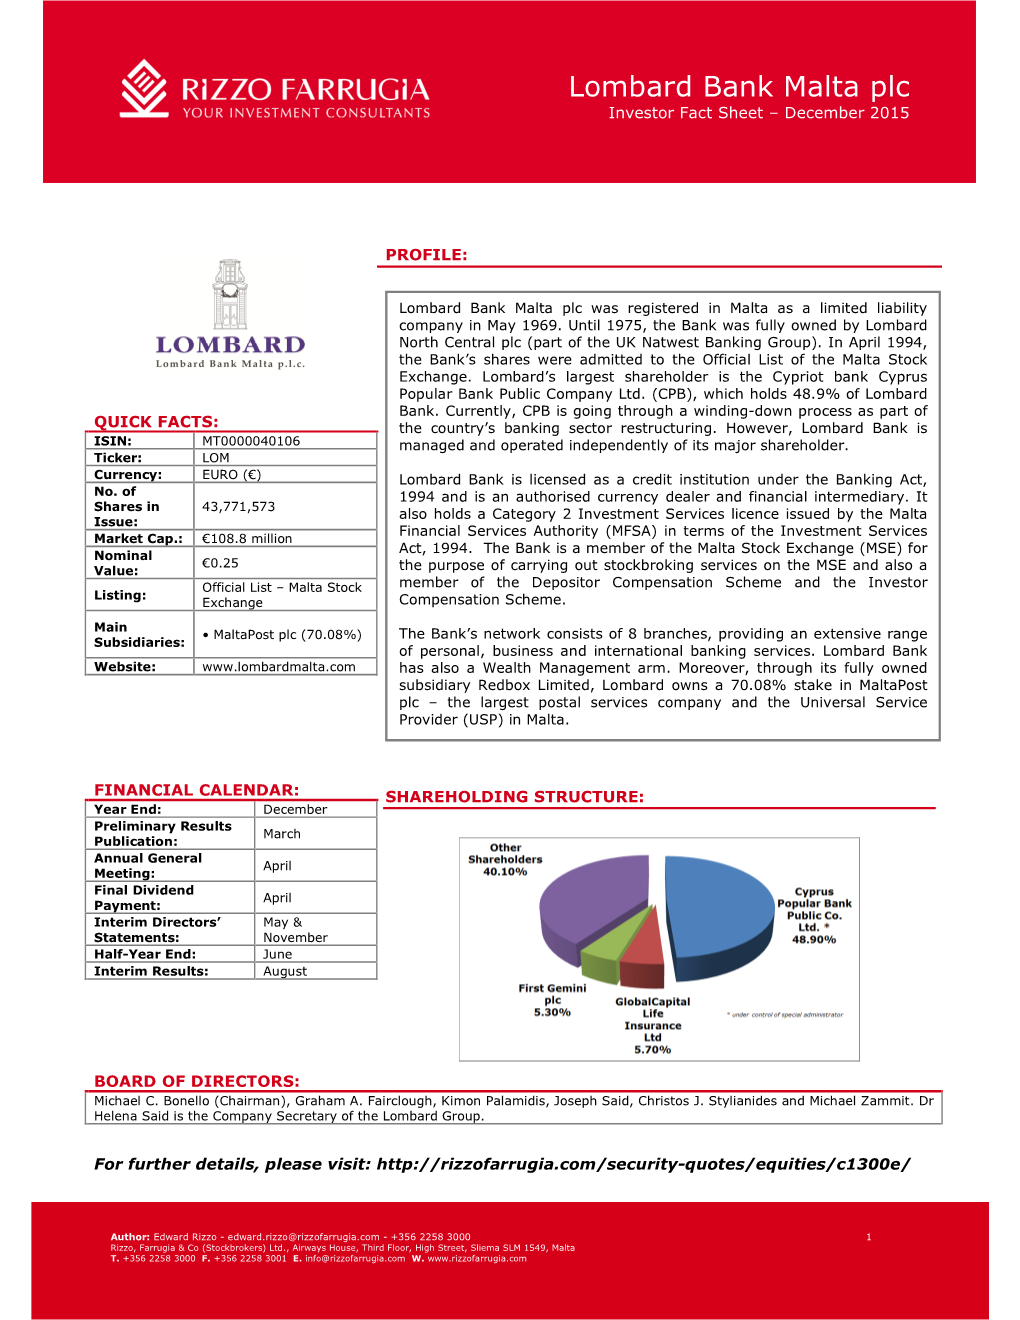 Lombard Bank Malta Plc Investor Fact Sheet – December 2015